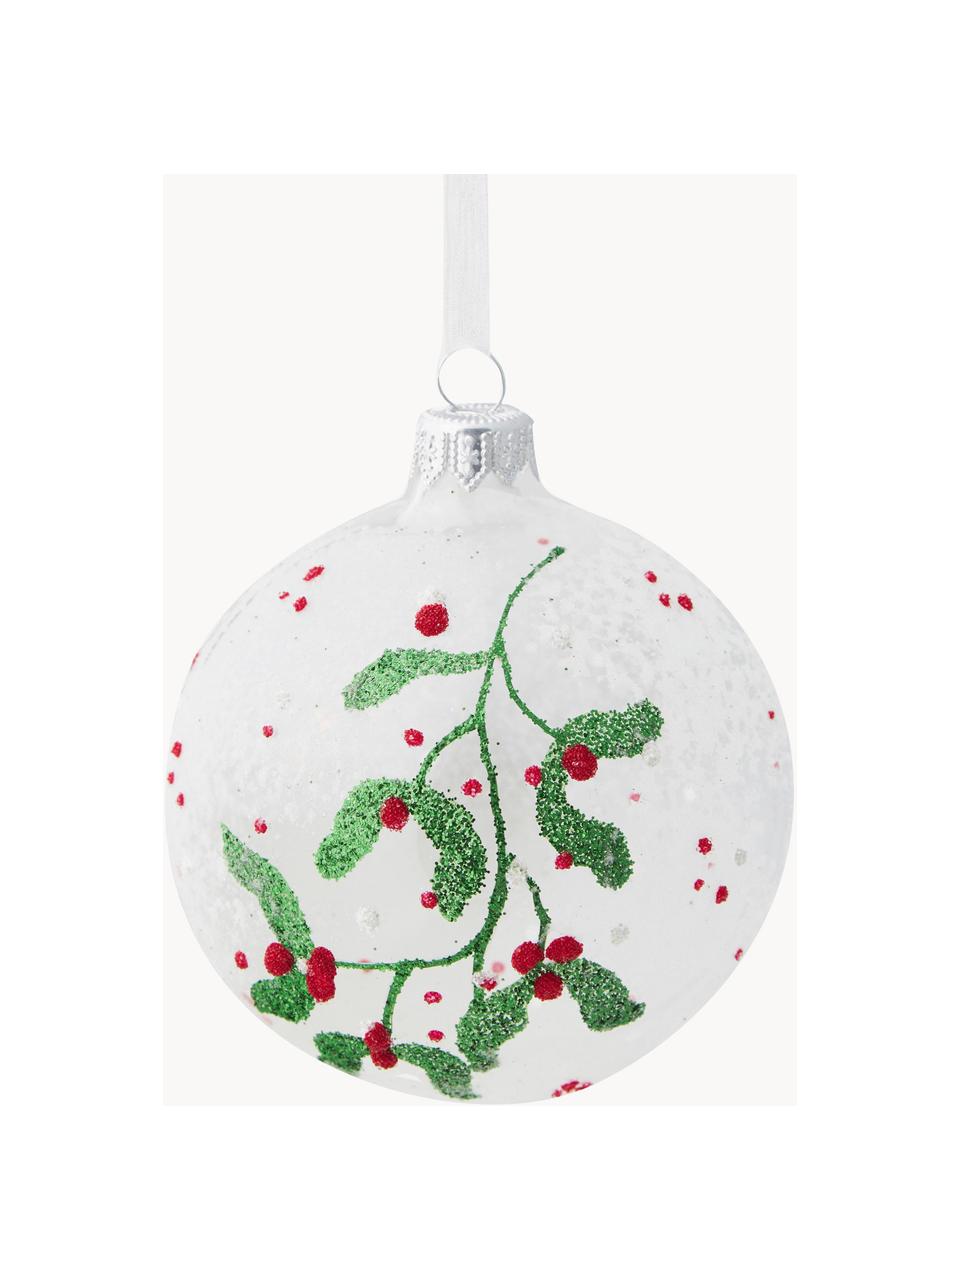 Boules de Noël soufflées bouche Berry, 6 pièces, Verre, Transparent, vert, rouge, blanc, Ø 8 cm